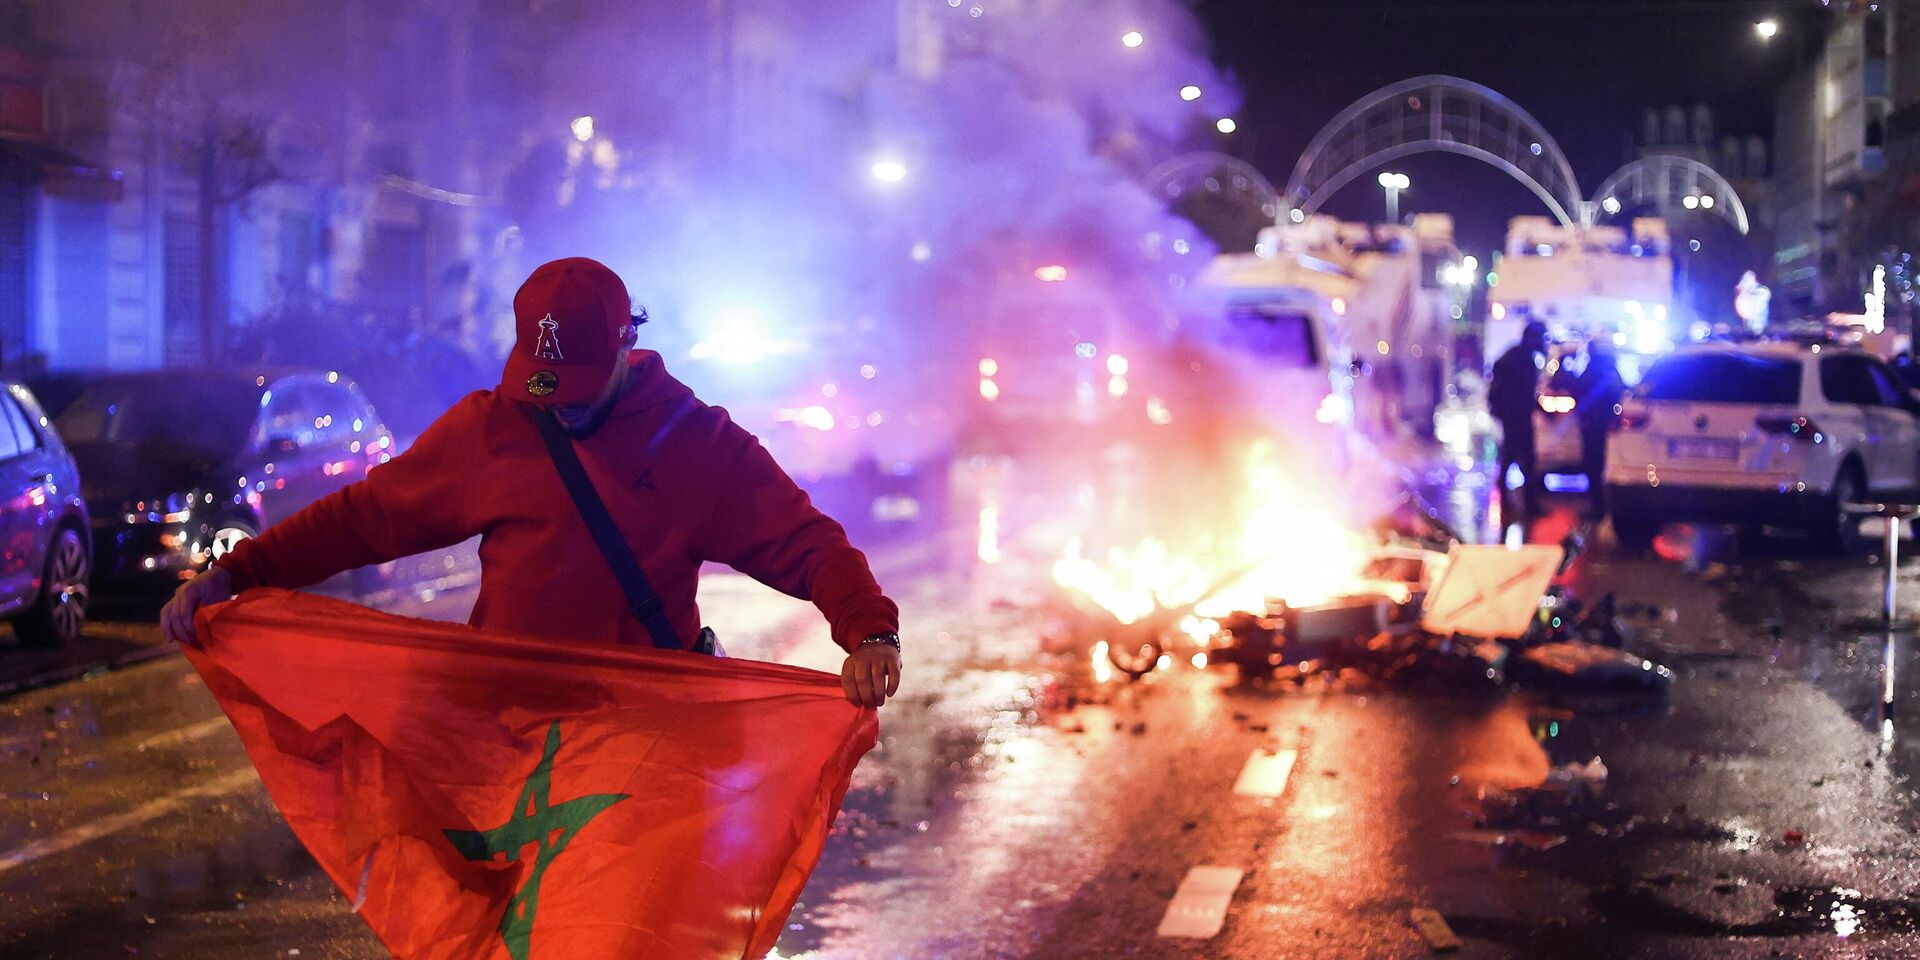 Болельщик держит марокканский флаг во время беспорядков в Брюсселе, Бельгия. 27 ноября 2022 года. - ИноСМИ, 1920, 28.11.2022